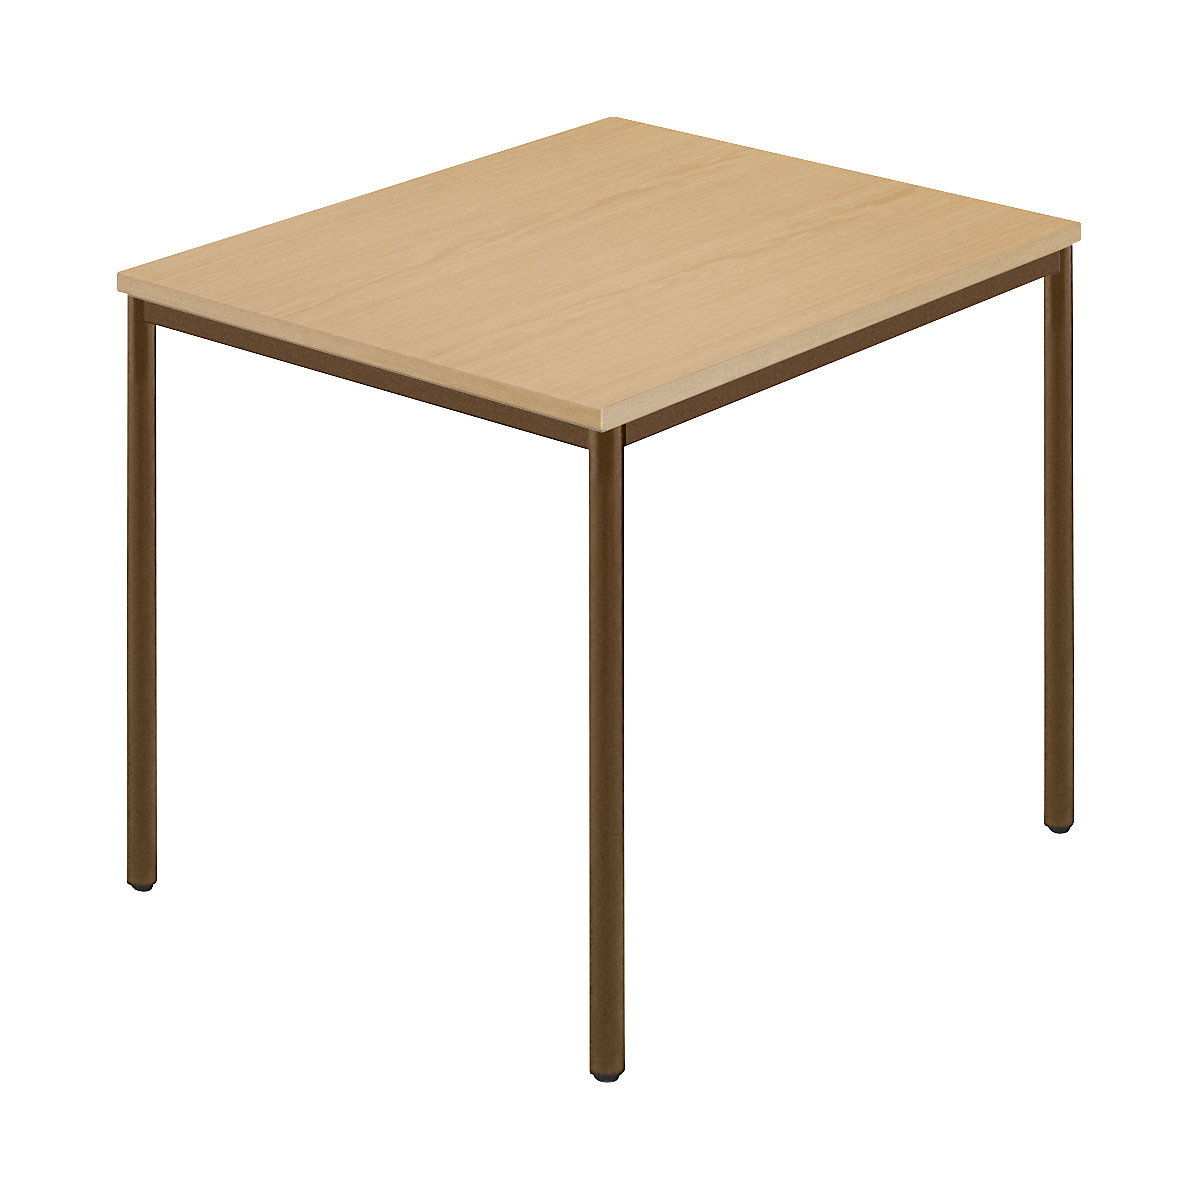 Pravokotna miza, okrogla cev s premazom, ŠxG 800 x 800 mm, naravna bukev / rjava-6